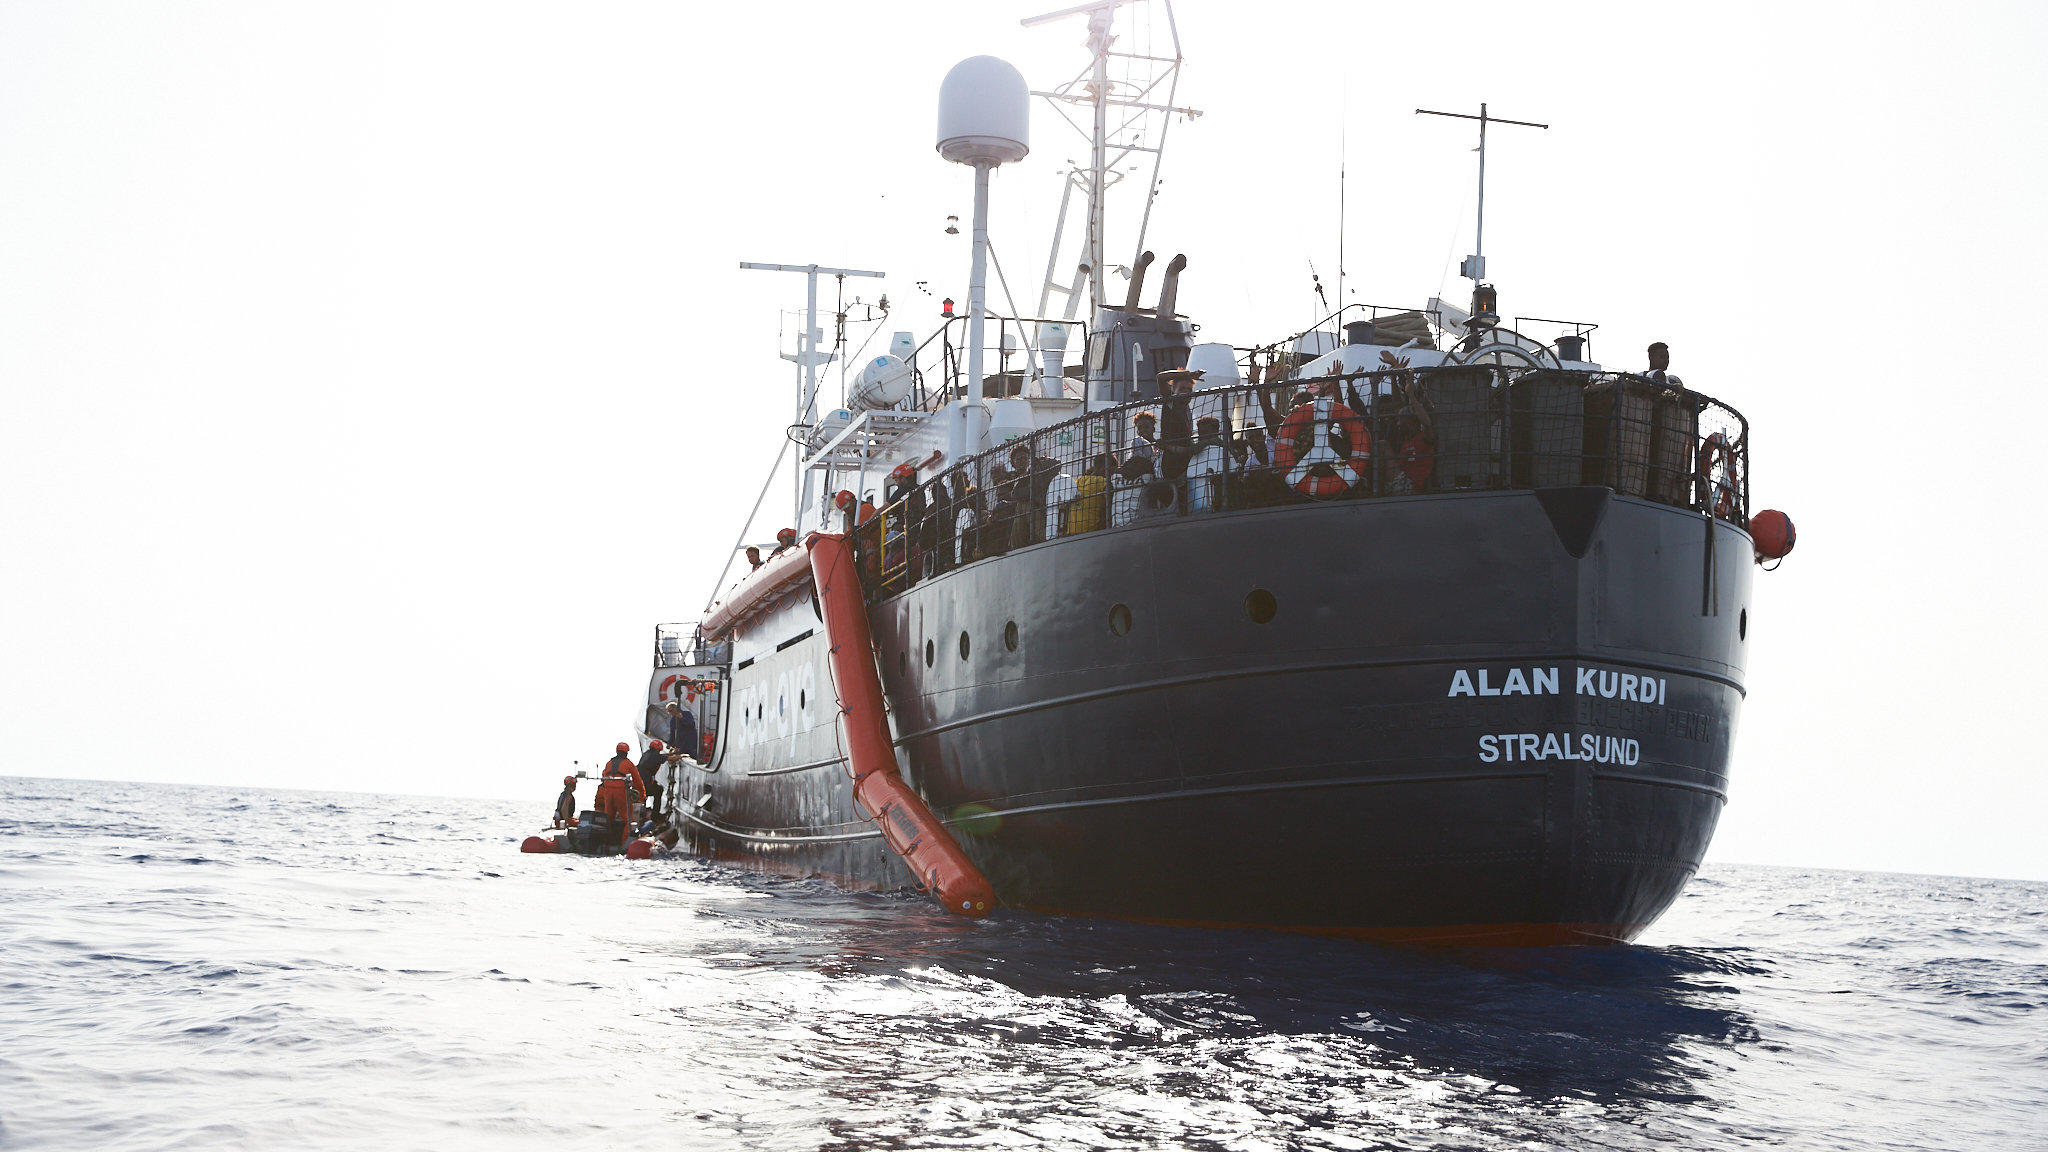 HANDOUT - 05.07.2019, ---: Flüchtlinge werden vor der Küste von Libyen von Mitgliedern der Rettungsorganisation Sea-Eye (l) auf deren Hilfsschiff "Alan Kurdi" gebracht. Foto: Fabian Heinz/Sea-Eye/dpa - ACHTUNG: Nur zur redaktionellen Verwendung im Zu